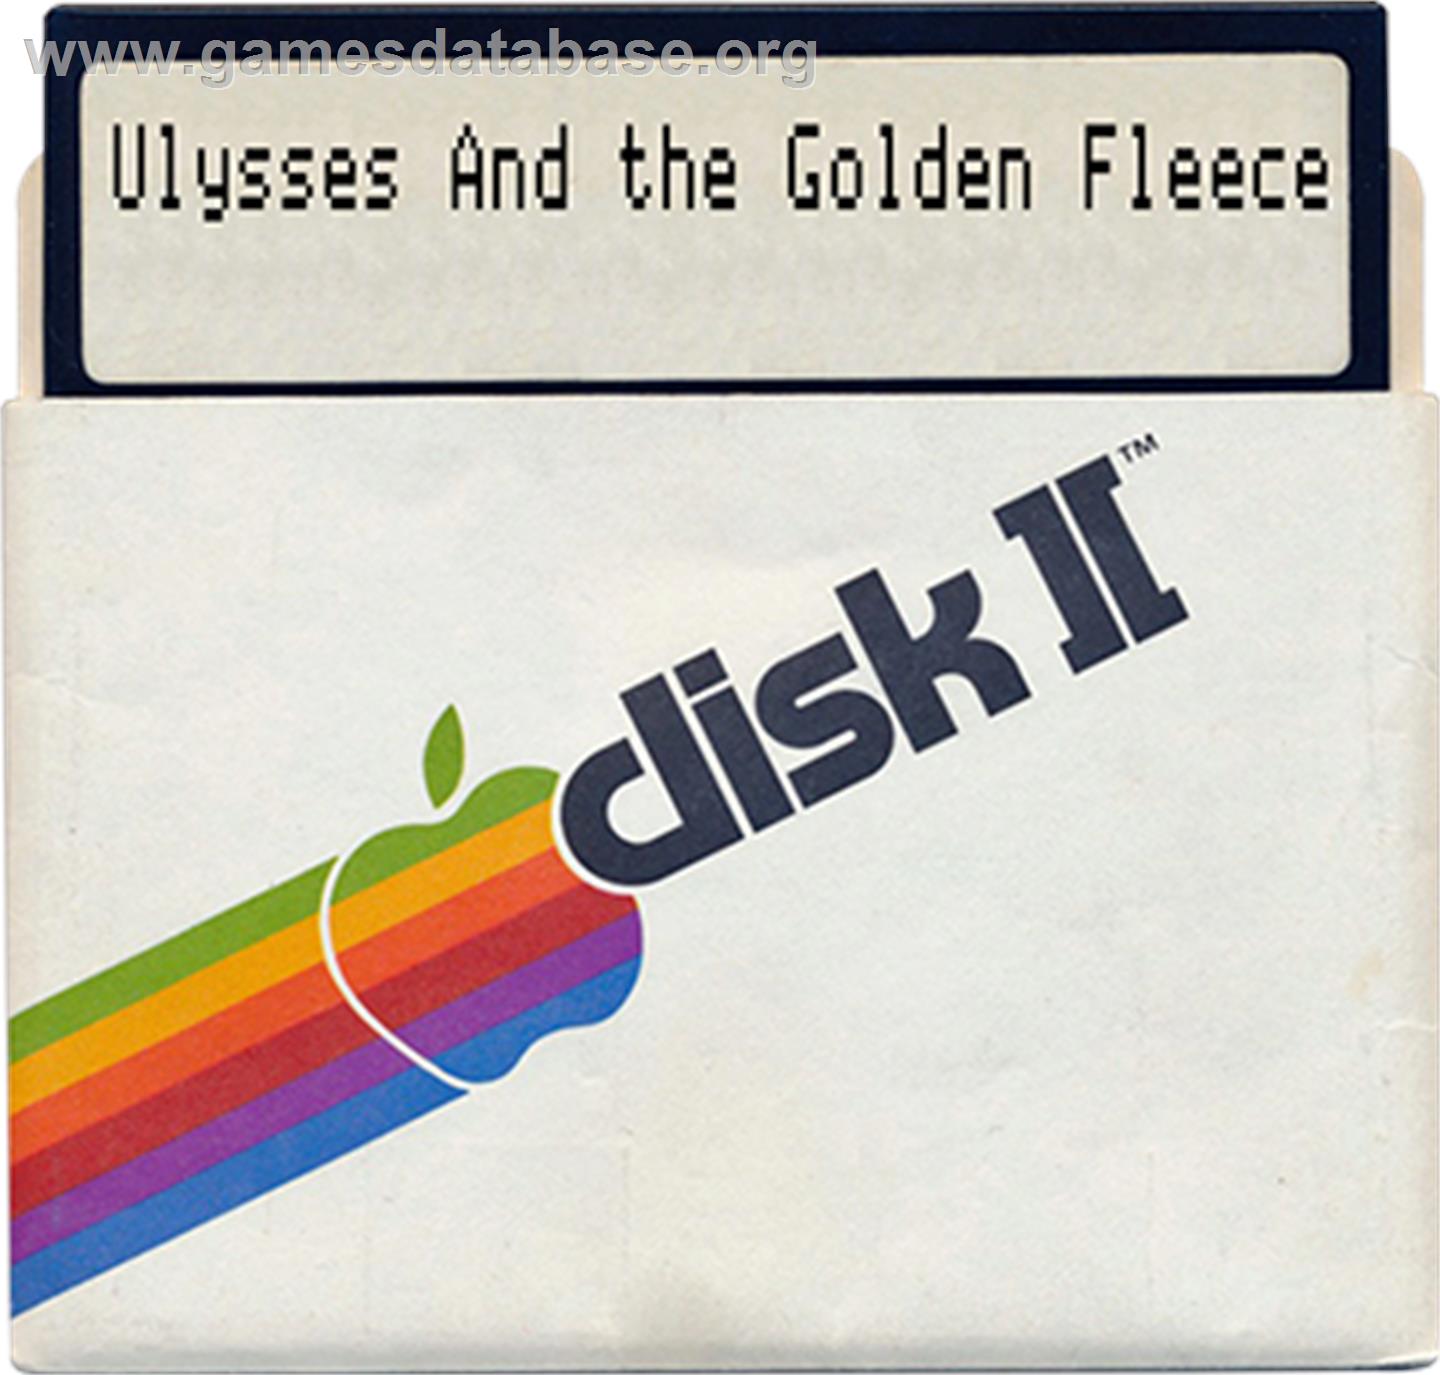 Ulysses and the Golden Fleece - Apple II - Artwork - Disc